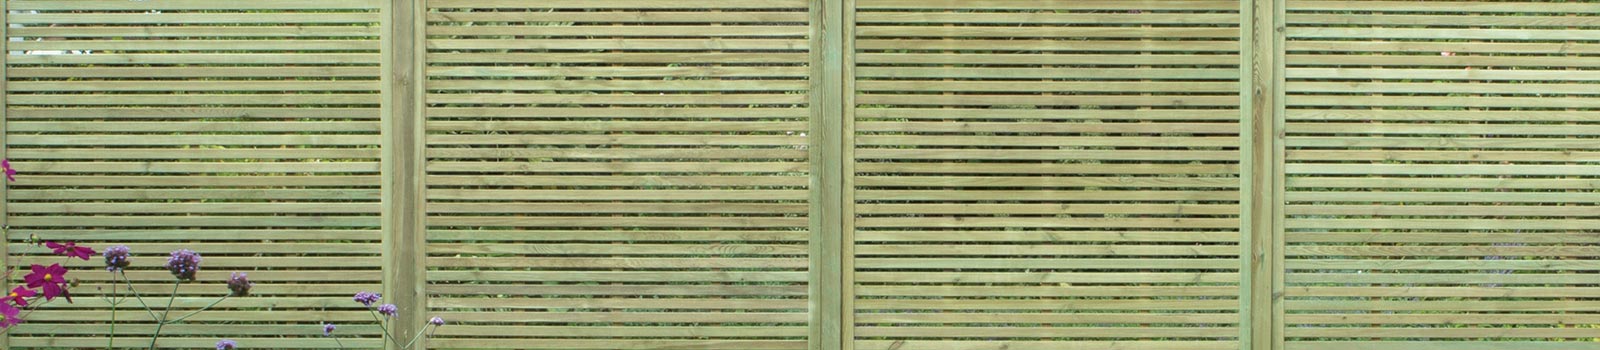 Slatted fence panels